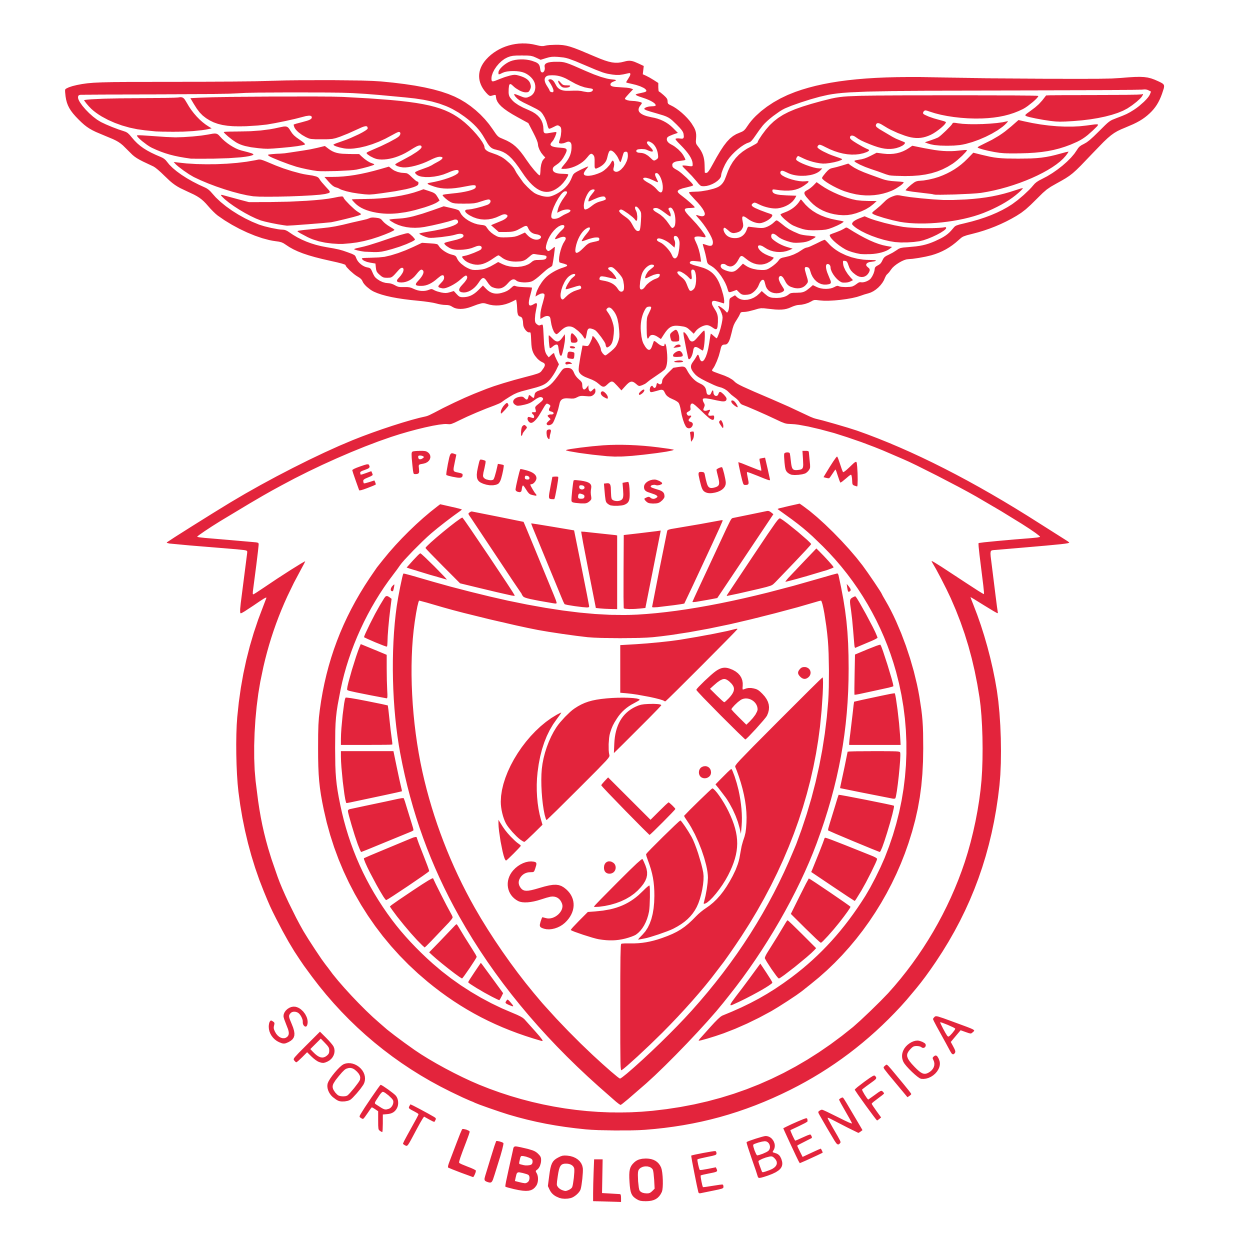 SLB Logo - SLB - Sport Libolo e Benfica, o novo clube da nossa terra